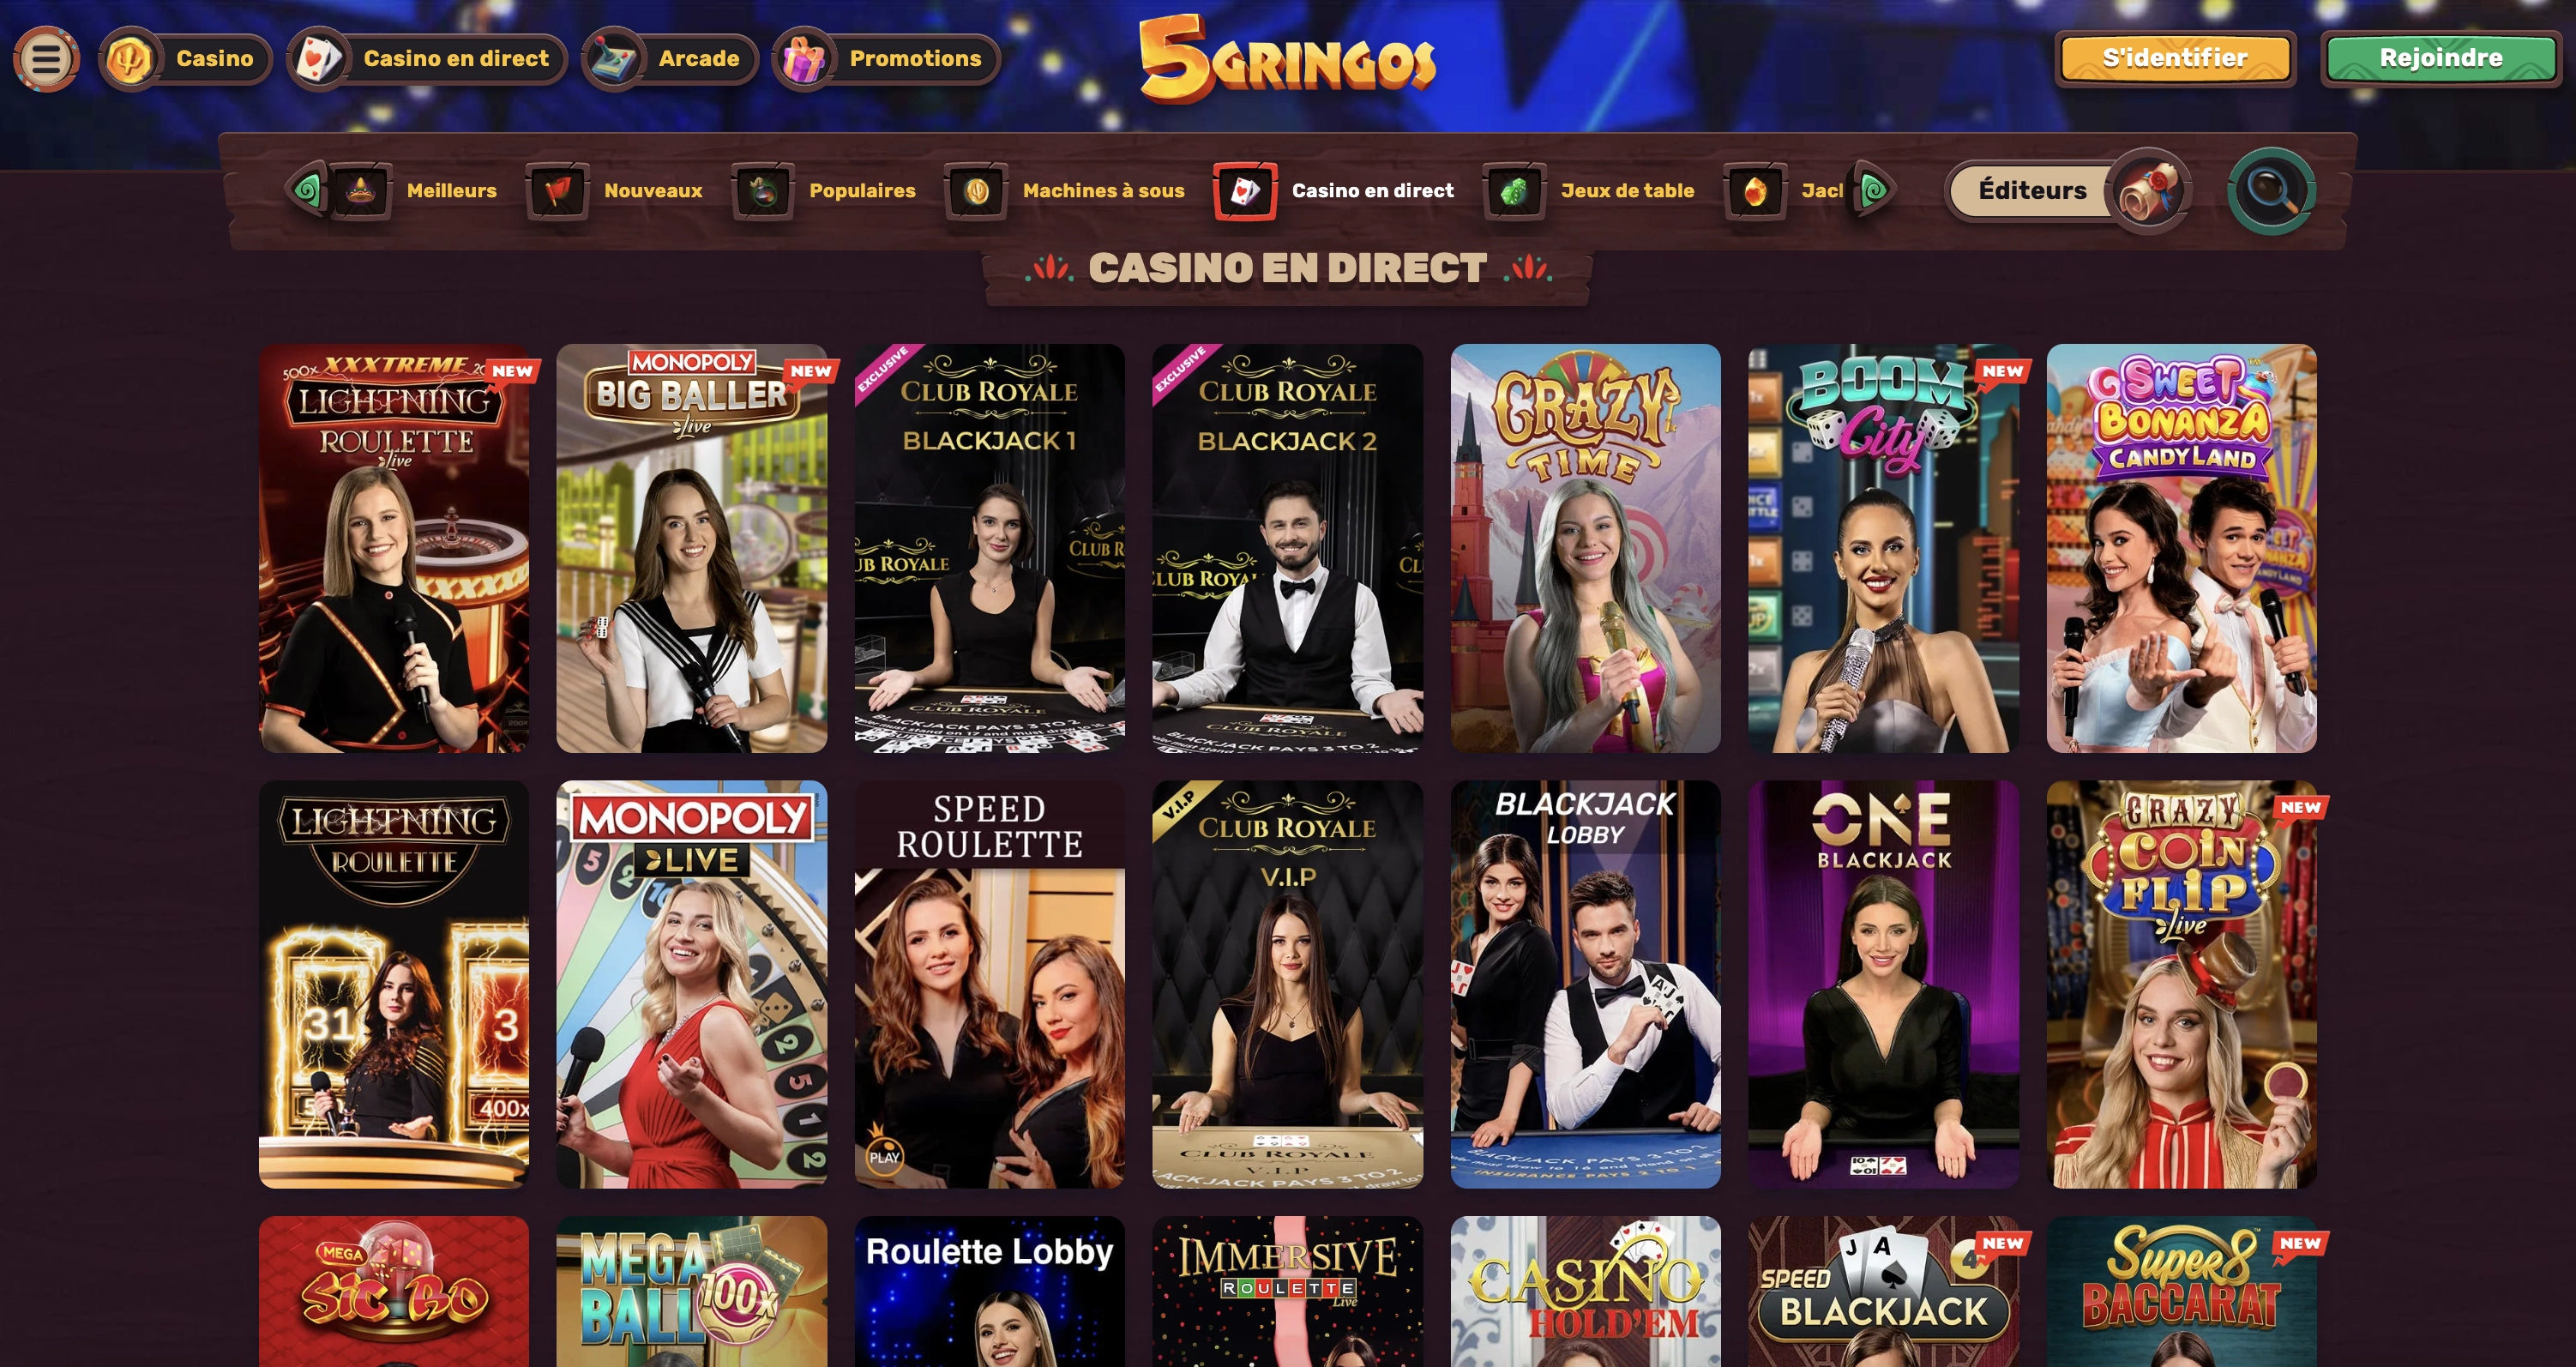 Le casino en ligne 5Gringos dispose de très nombreux jeux en direct et jeux de table